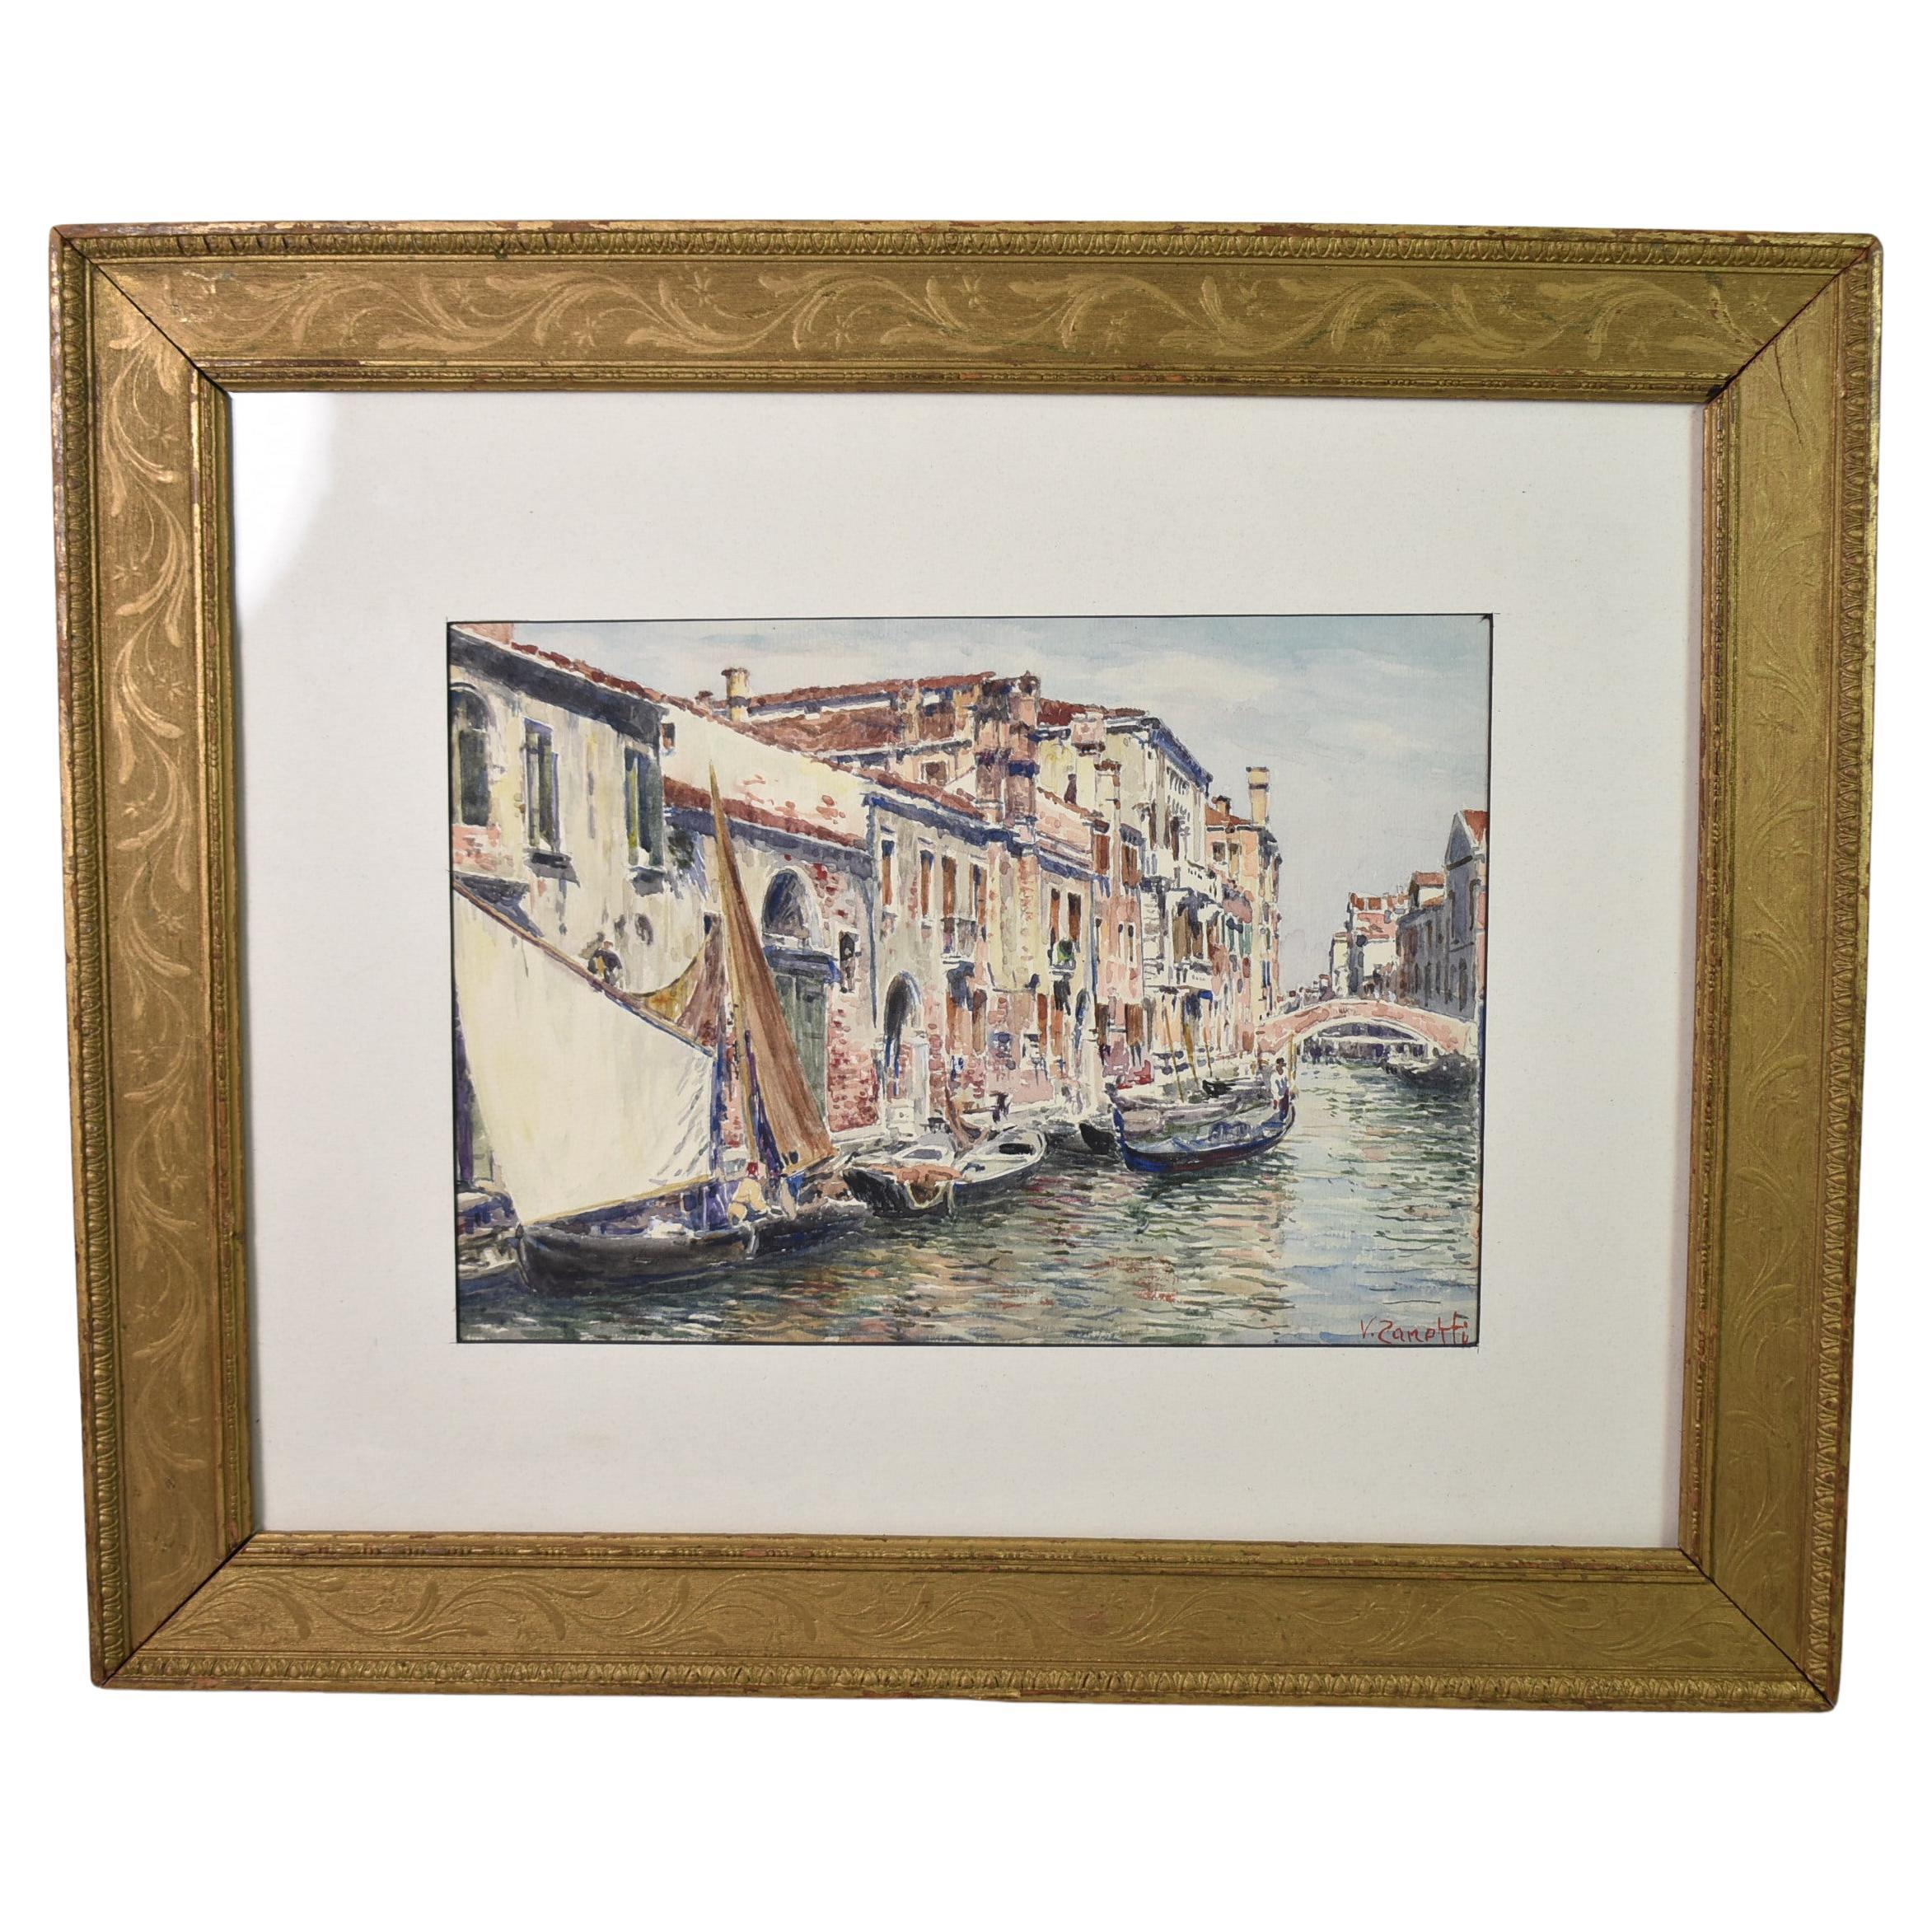 Vettore Zanetti, Aquarell-Kanalsszene aus Venedig, signiert